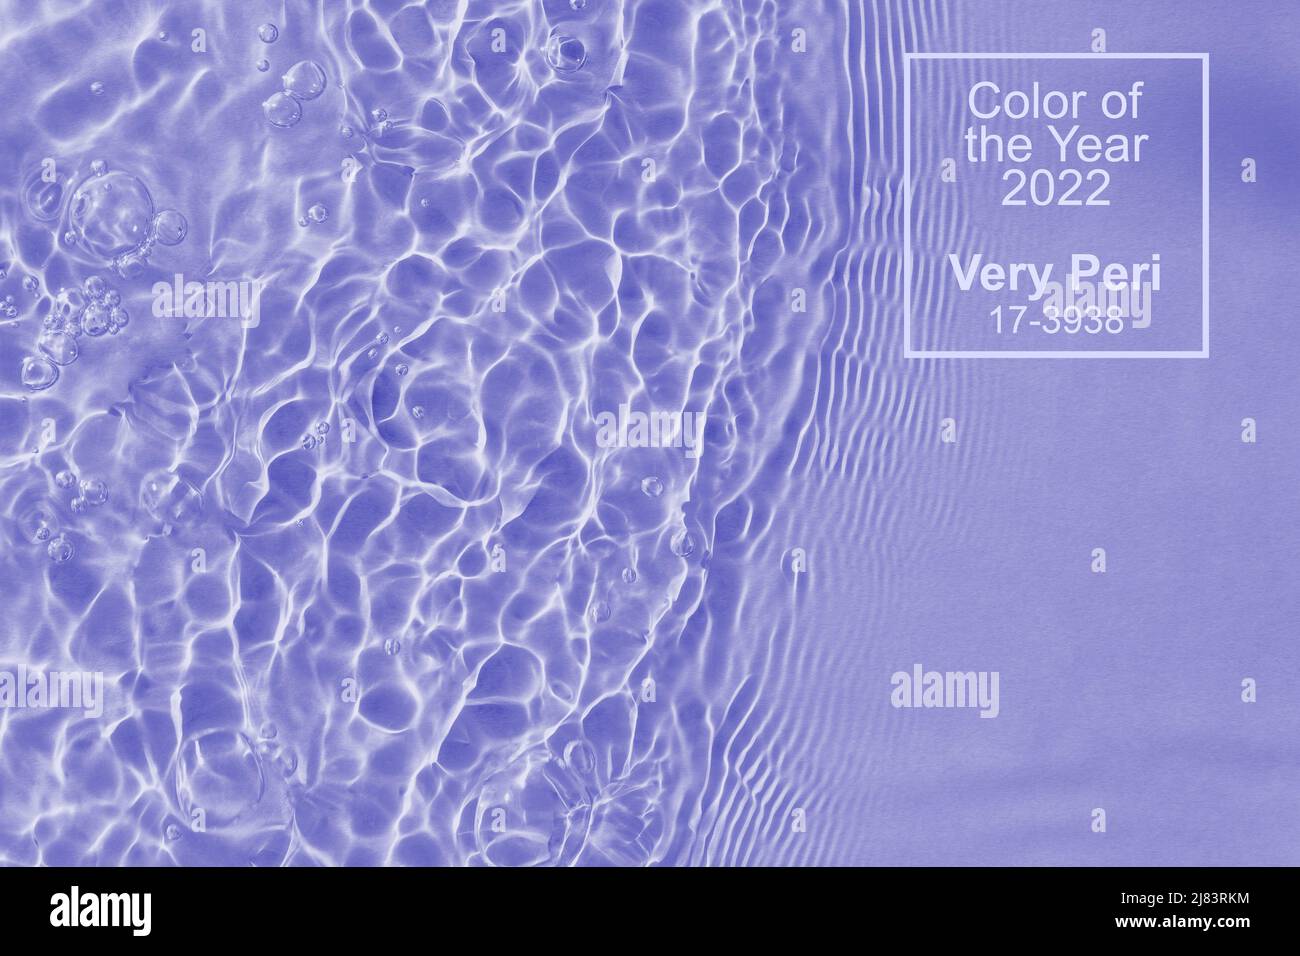 Acqua chiara superficie texture con spruzzi bolle. Colore dell'anno 2022 molto Peri. Colore Pantone 2022. Foto Stock